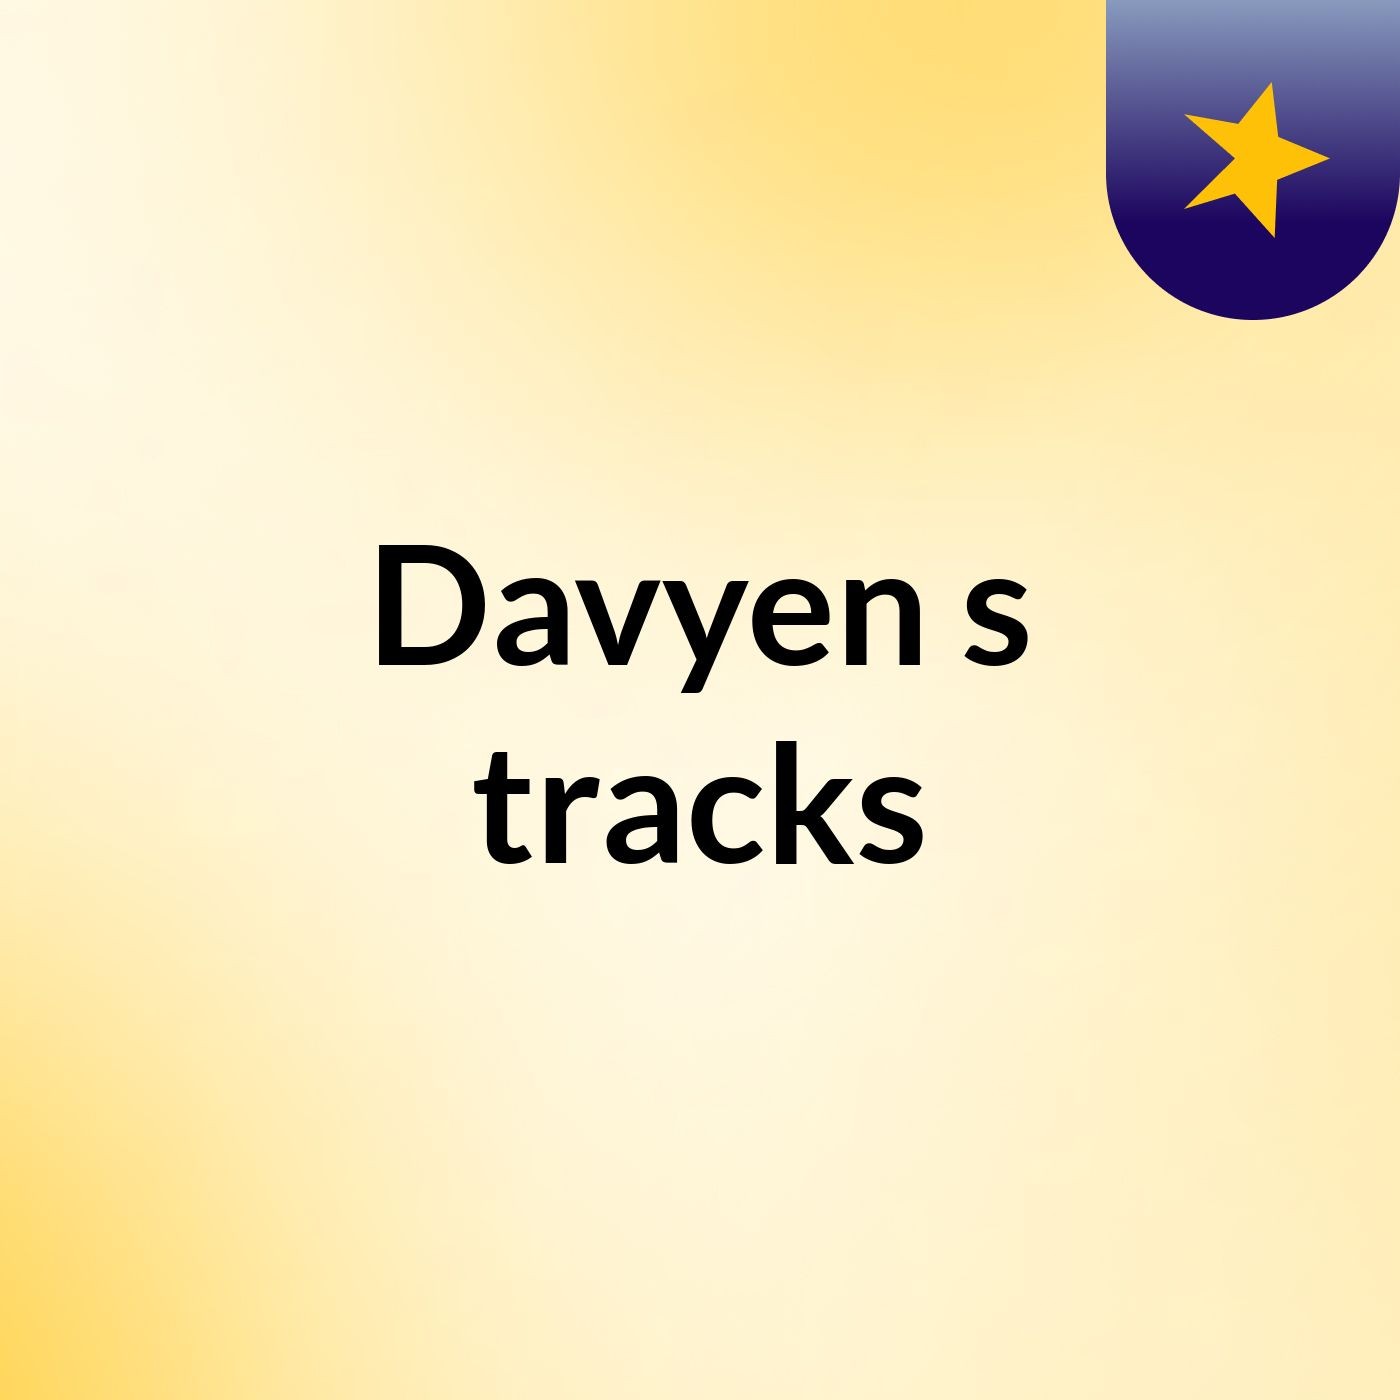 Davyen's tracks